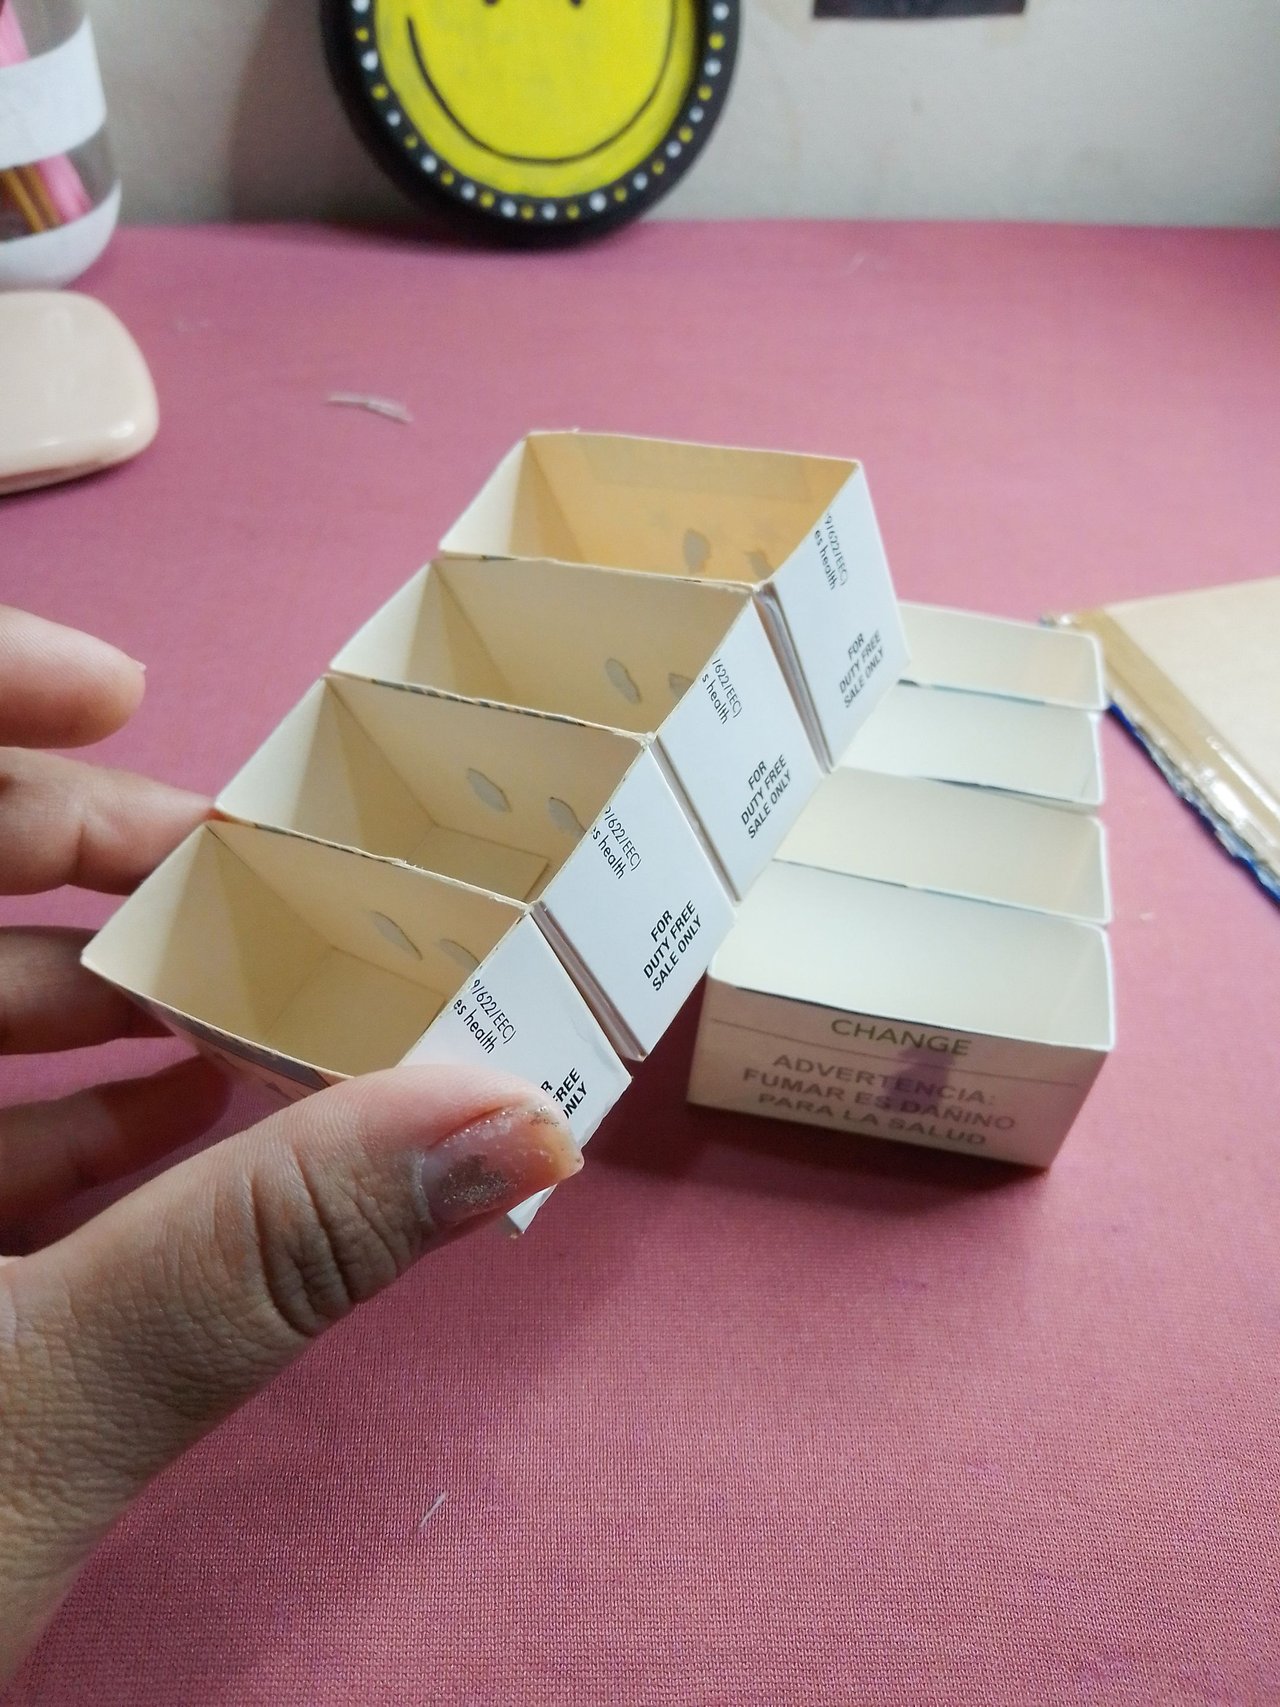 Manualidades: Organizador de abalorios hecho con cajas de cigarrillos, Crafts: Bead organizer made with cigarettes packs ♻️♥